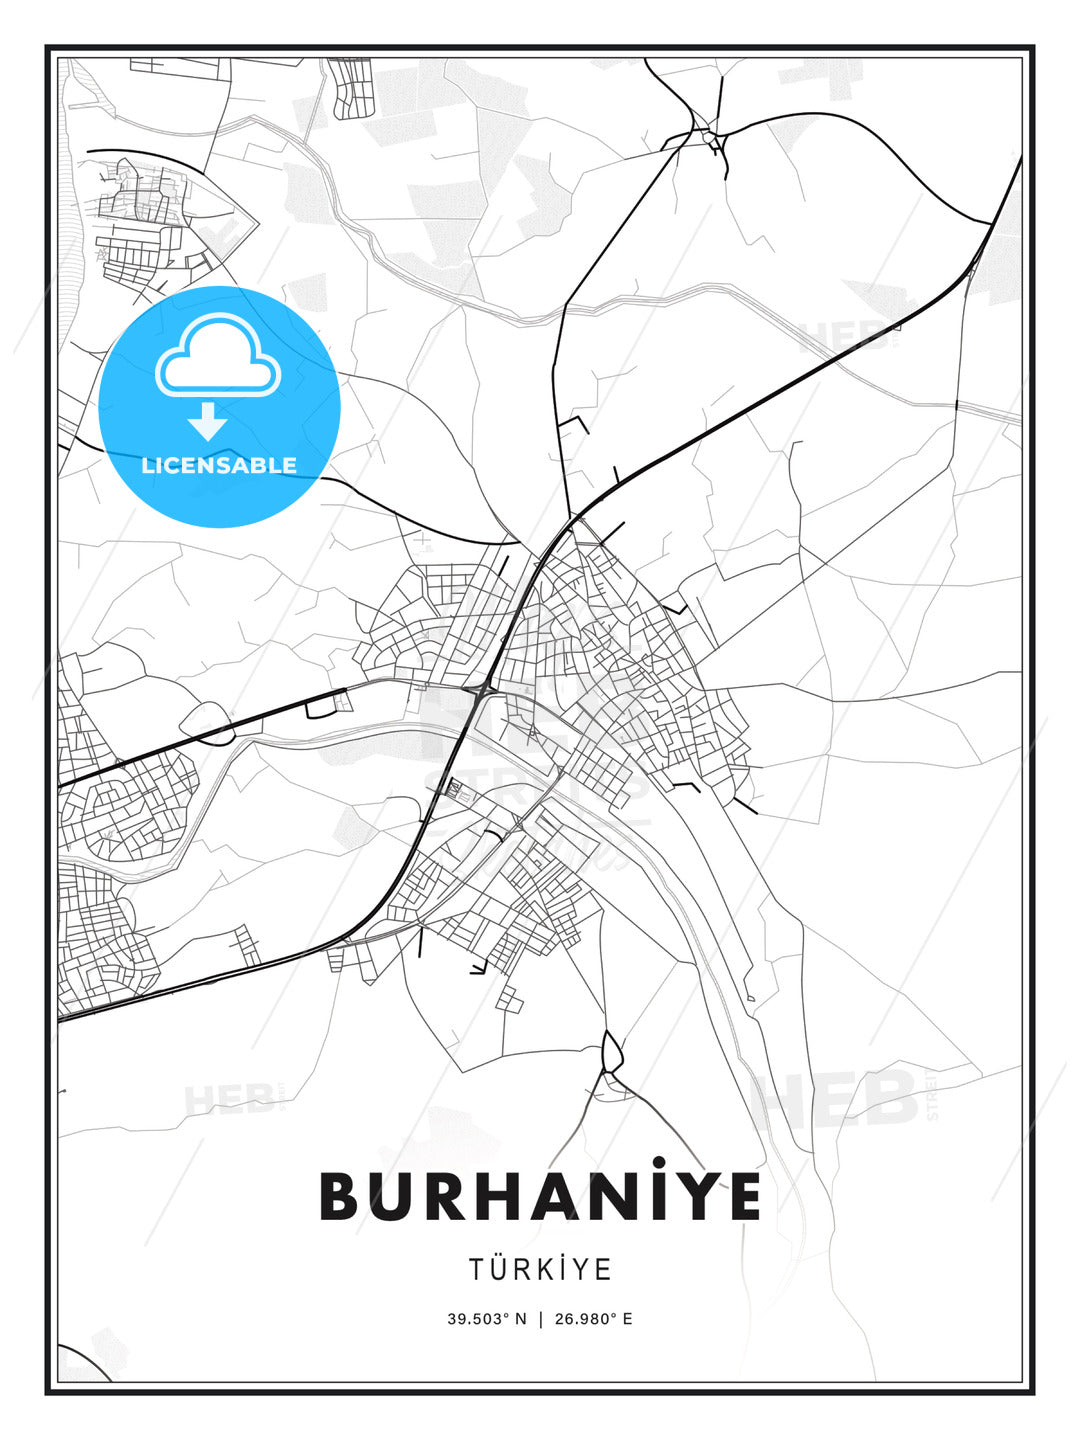 BURHANİYE / Burhaniye, Turkey, Modern Print Template in Various Formats - HEBSTREITS Sketches